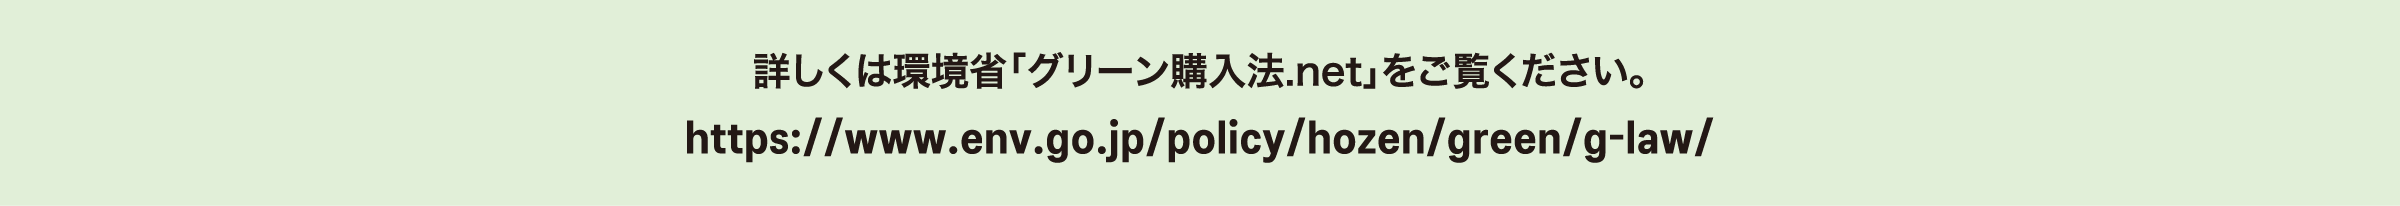 詳しくは環境省「グリーン購入法.net」をご覧ください。 https://www.env.go.jp/policy/hozen/green/g-law/